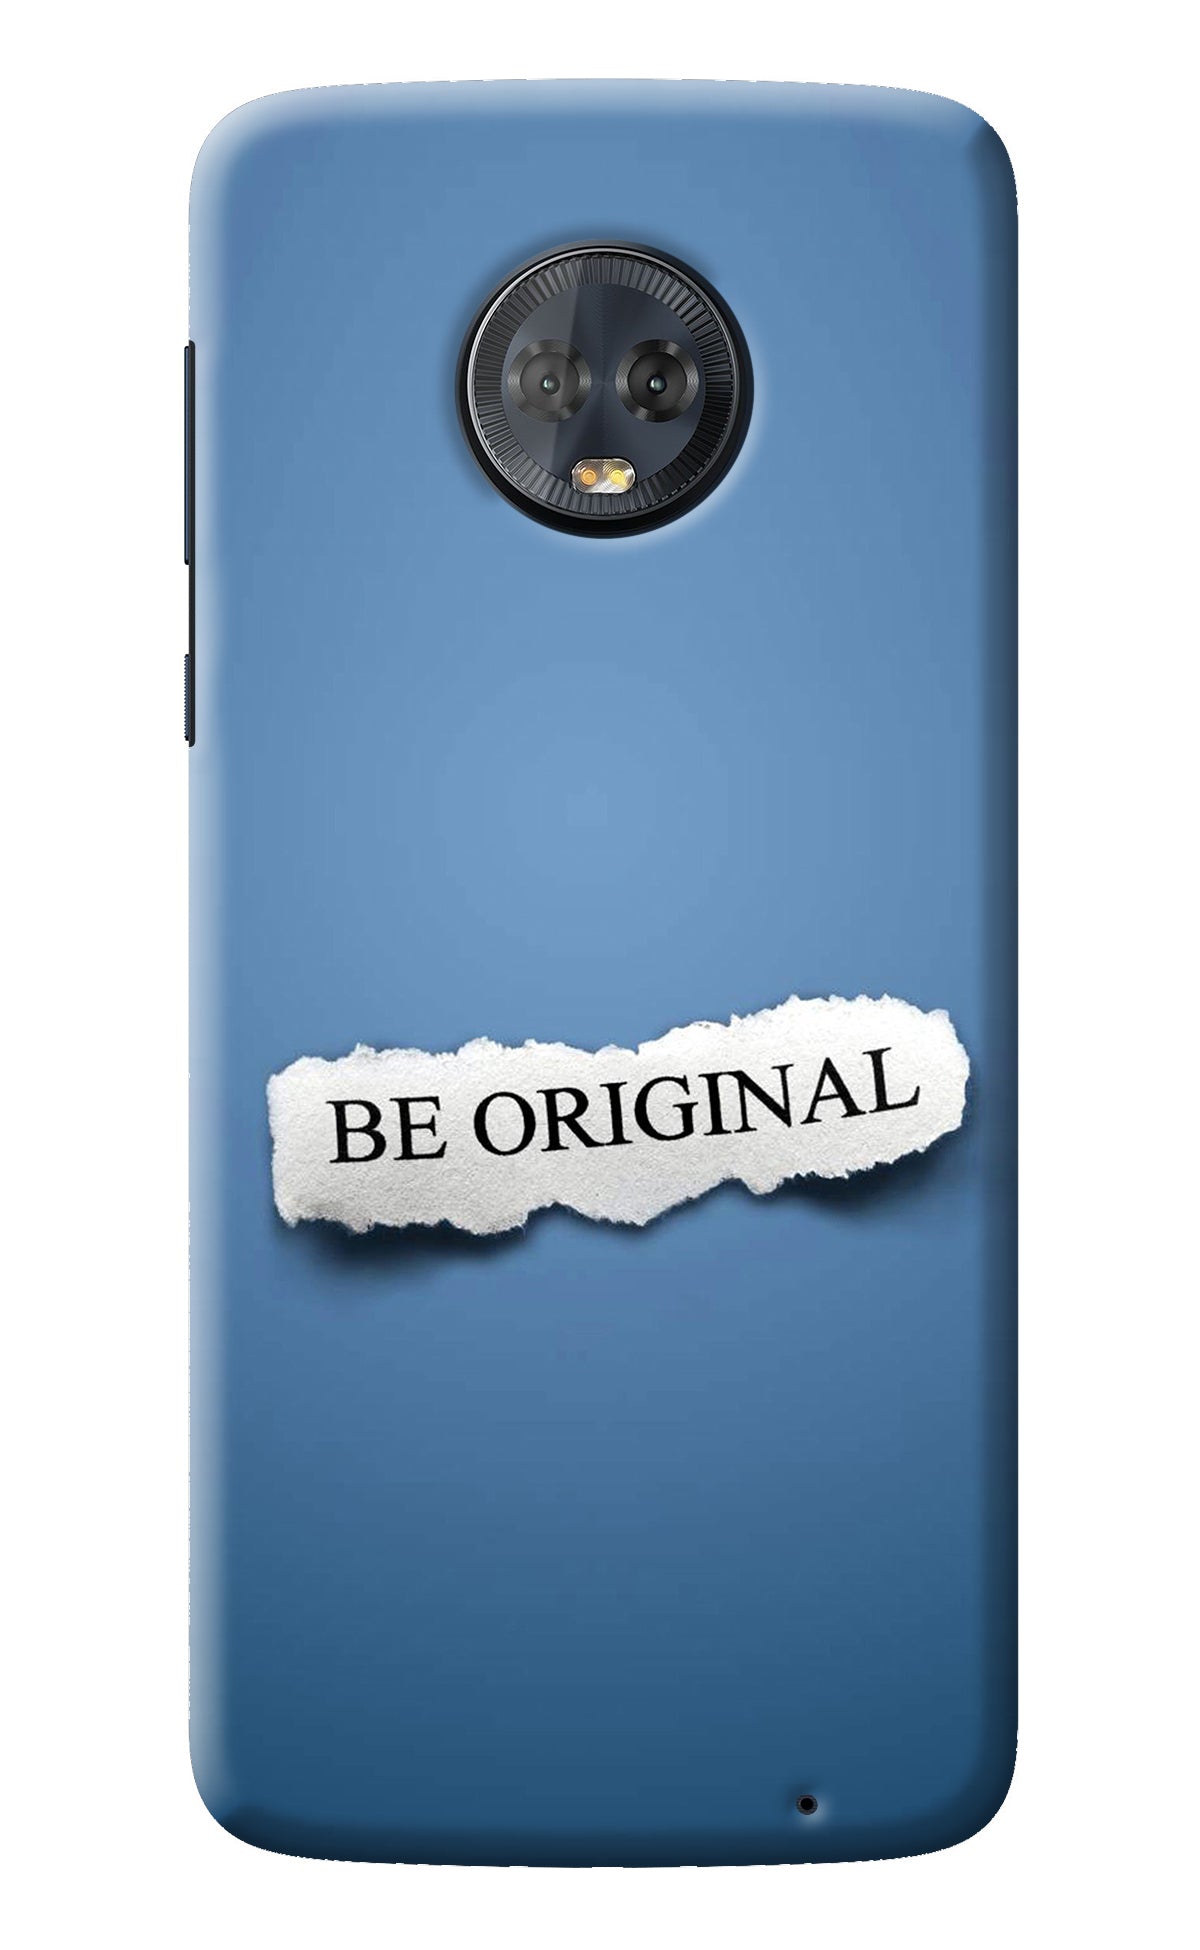 Be Original Moto G6 Back Cover